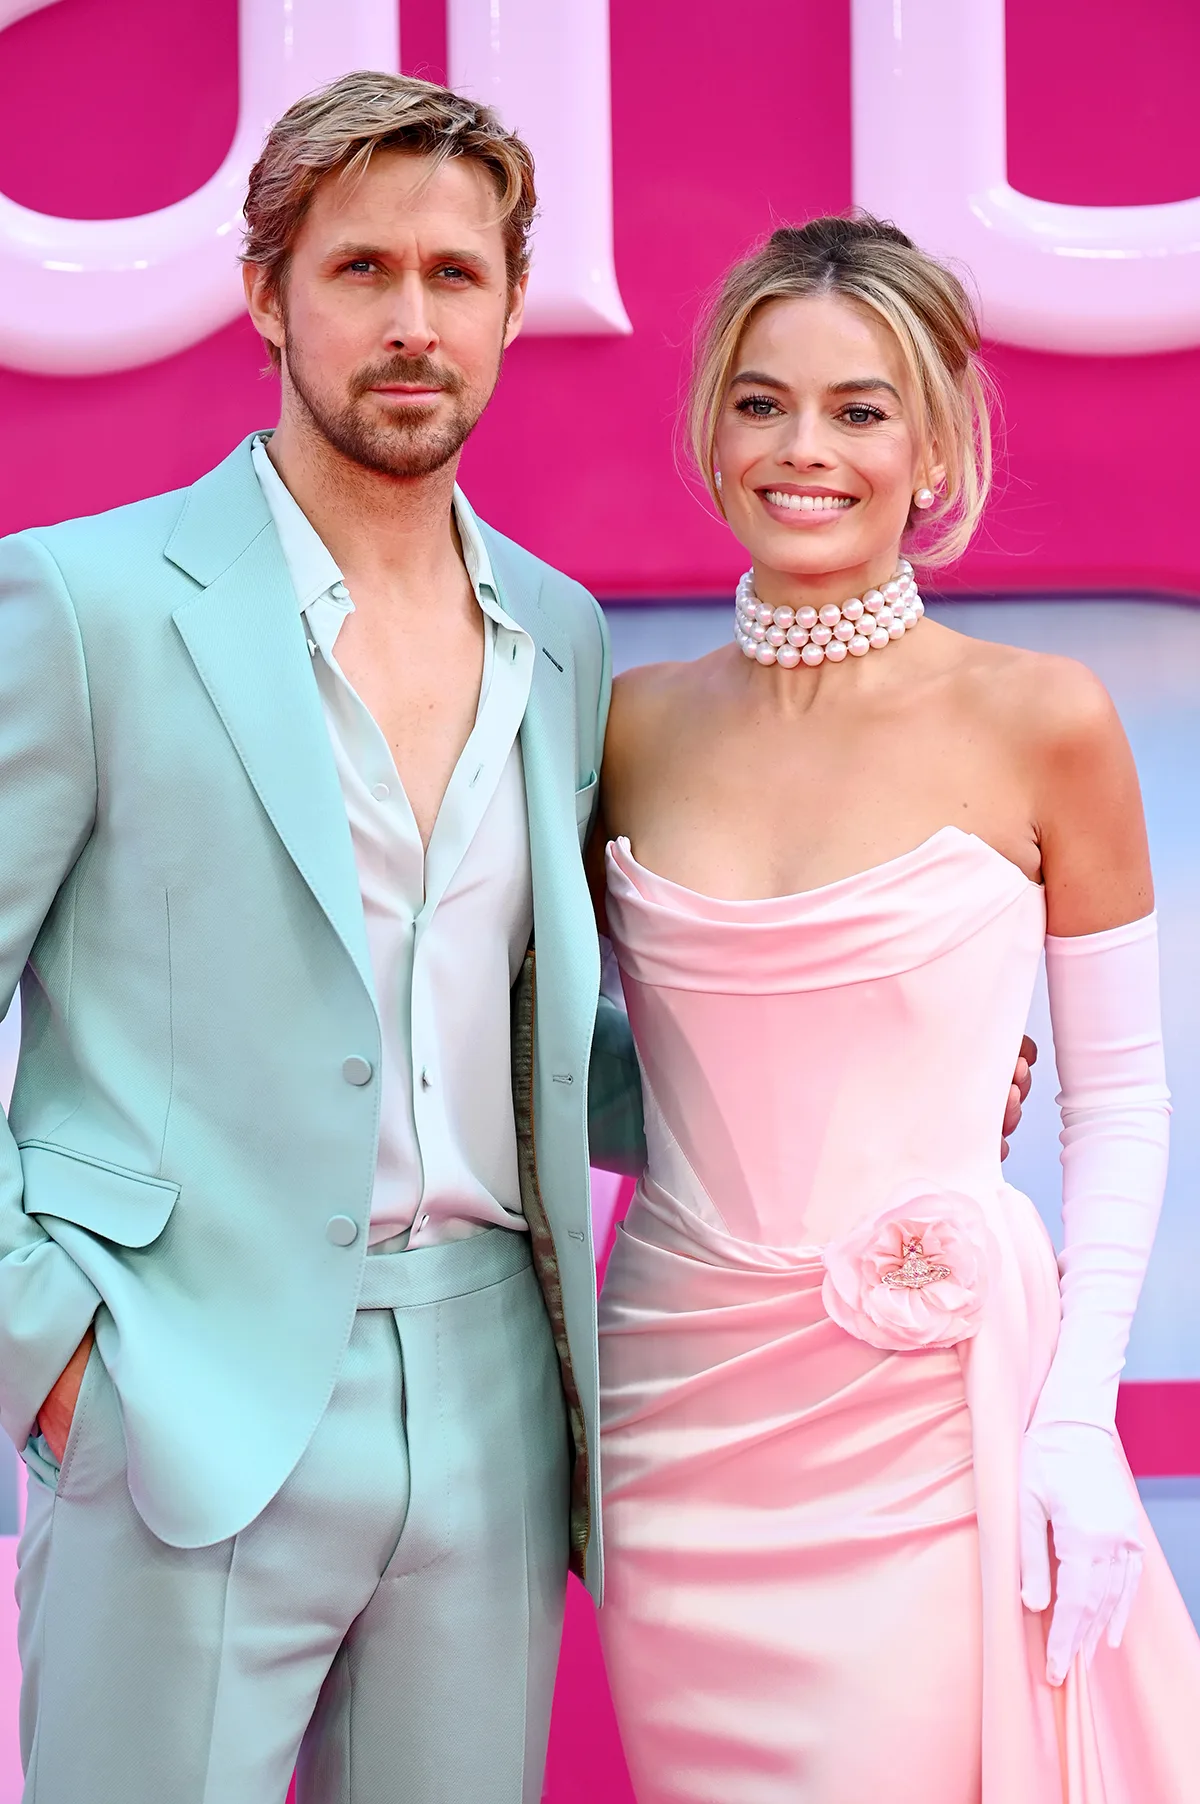 Margot Robbie atualiza status de novo filme com Ryan Gosling